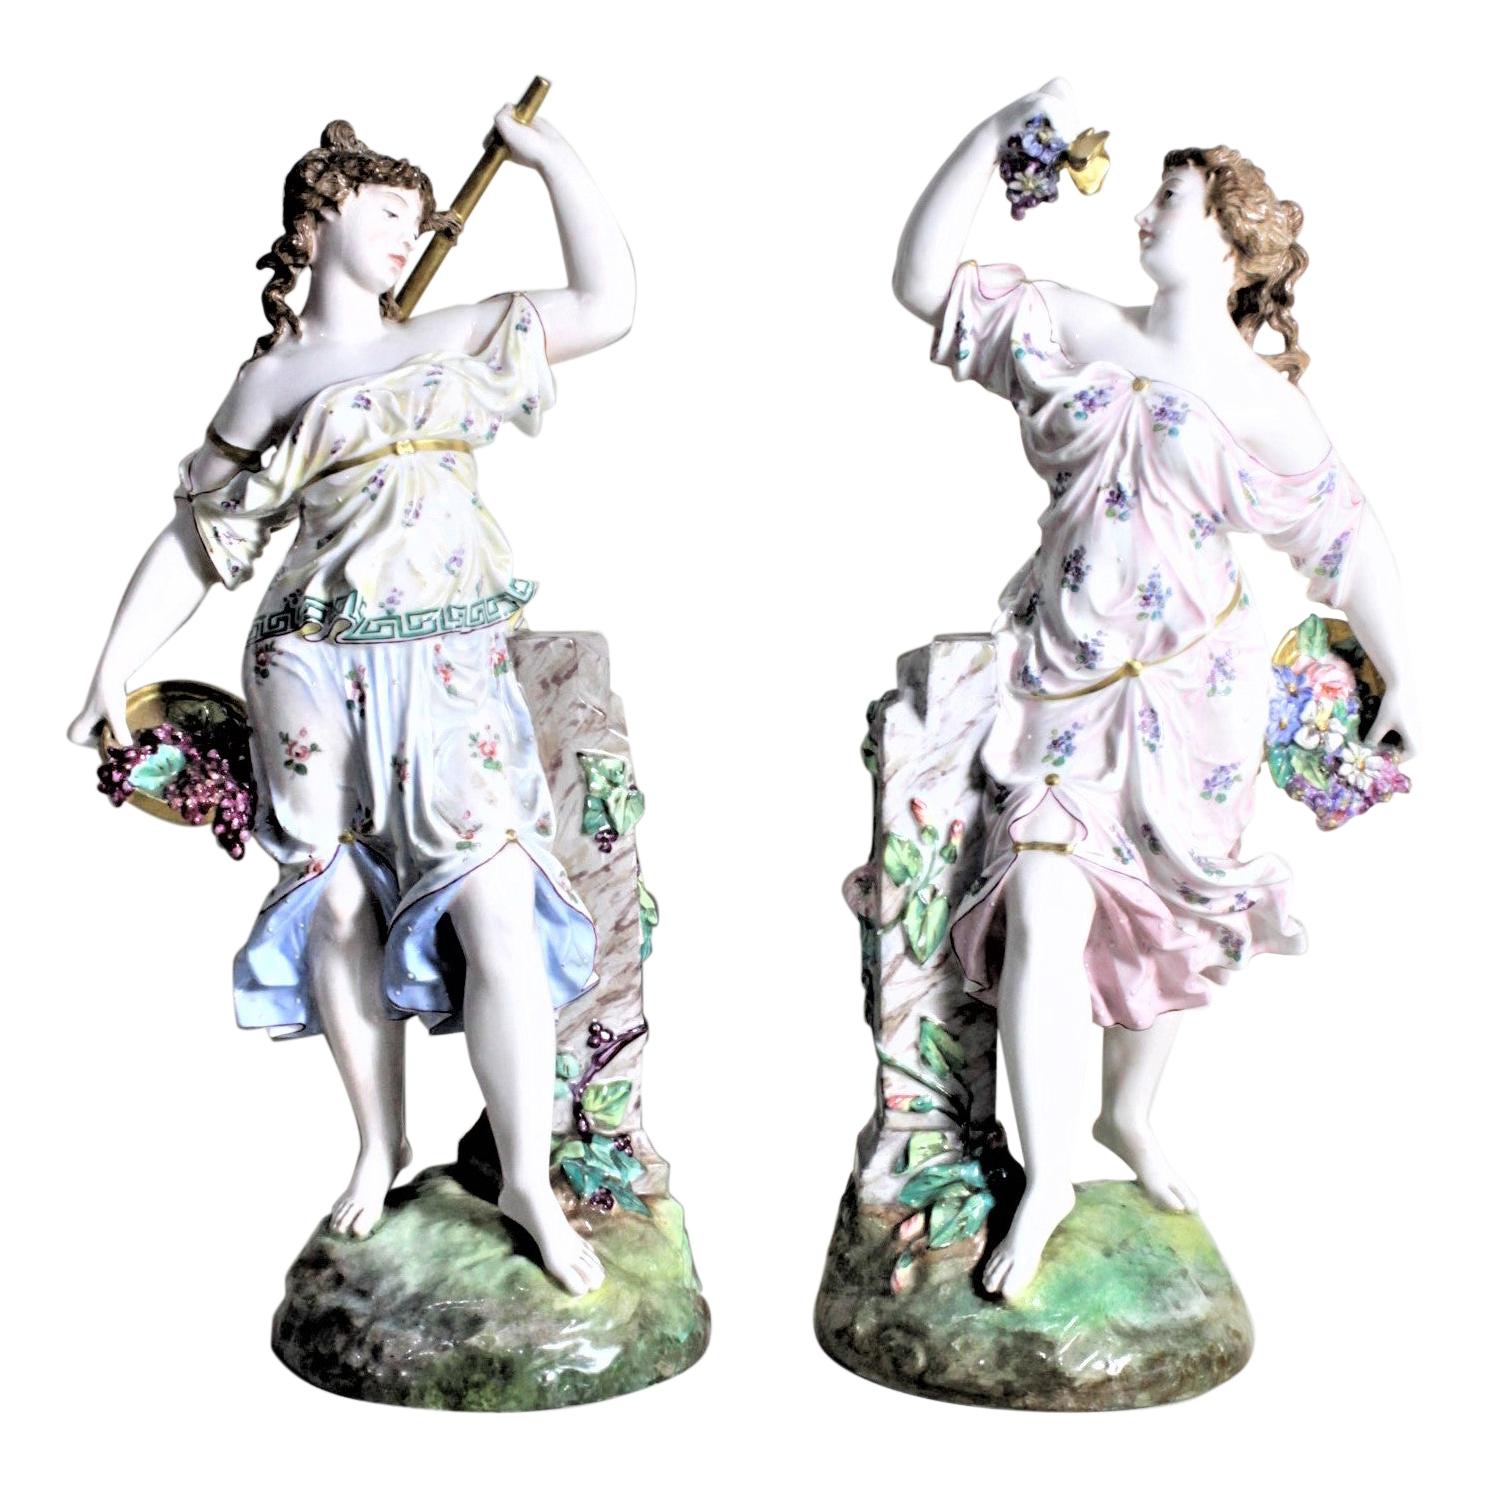 Paire de figurines féminines anciennes en porcelaine allemande ou autrichienne récoltant des raisins